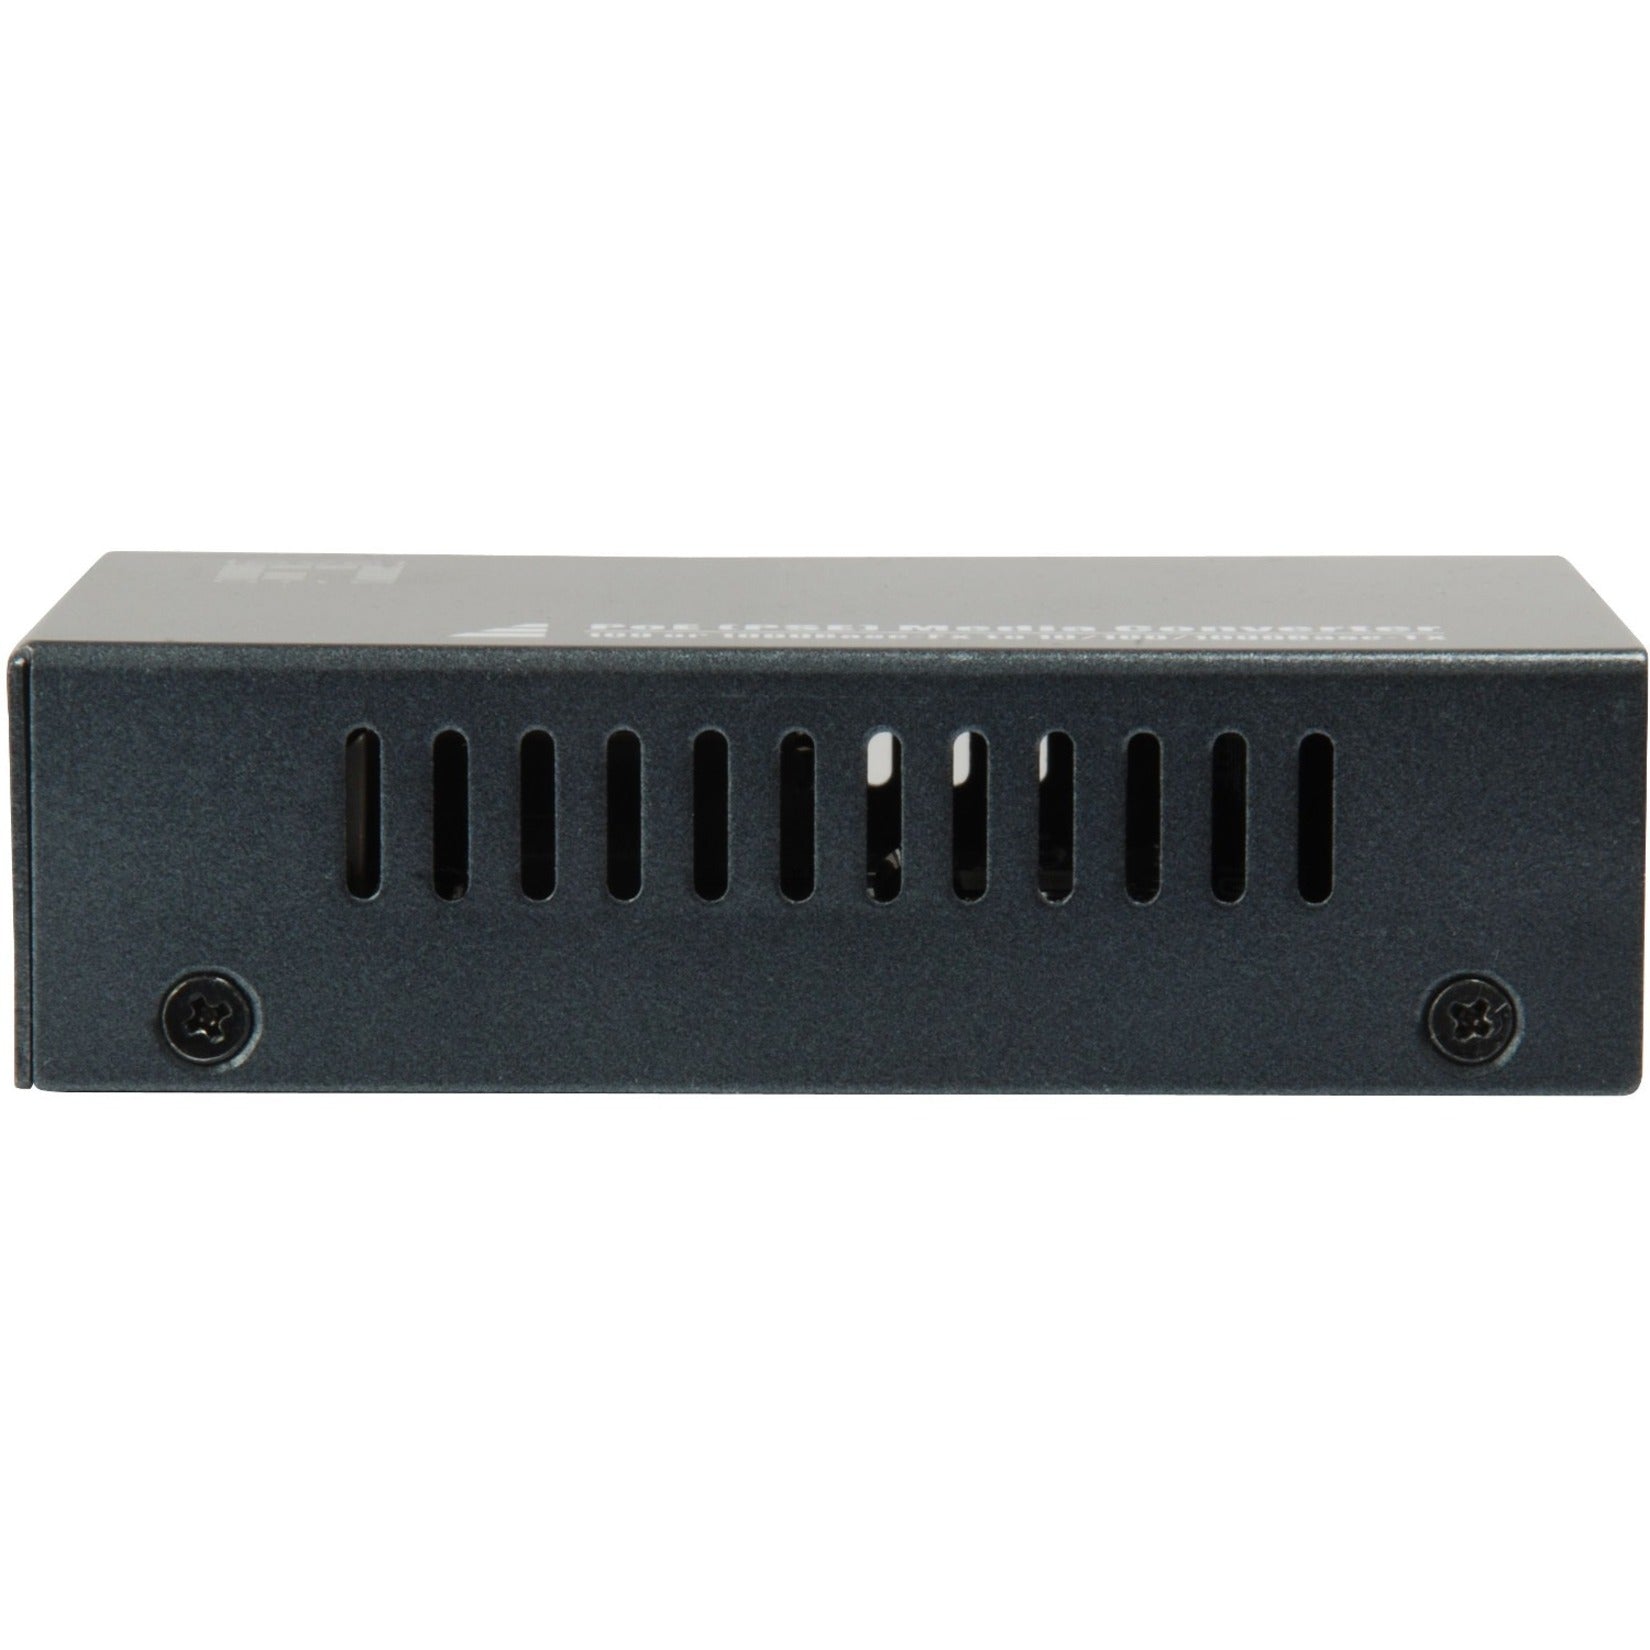 LevelOne GVT-2012 Transceiver/Media Converter, Gigabit Ethernet, Optical Fiber/Twisted Pair, 1 SFP Slot